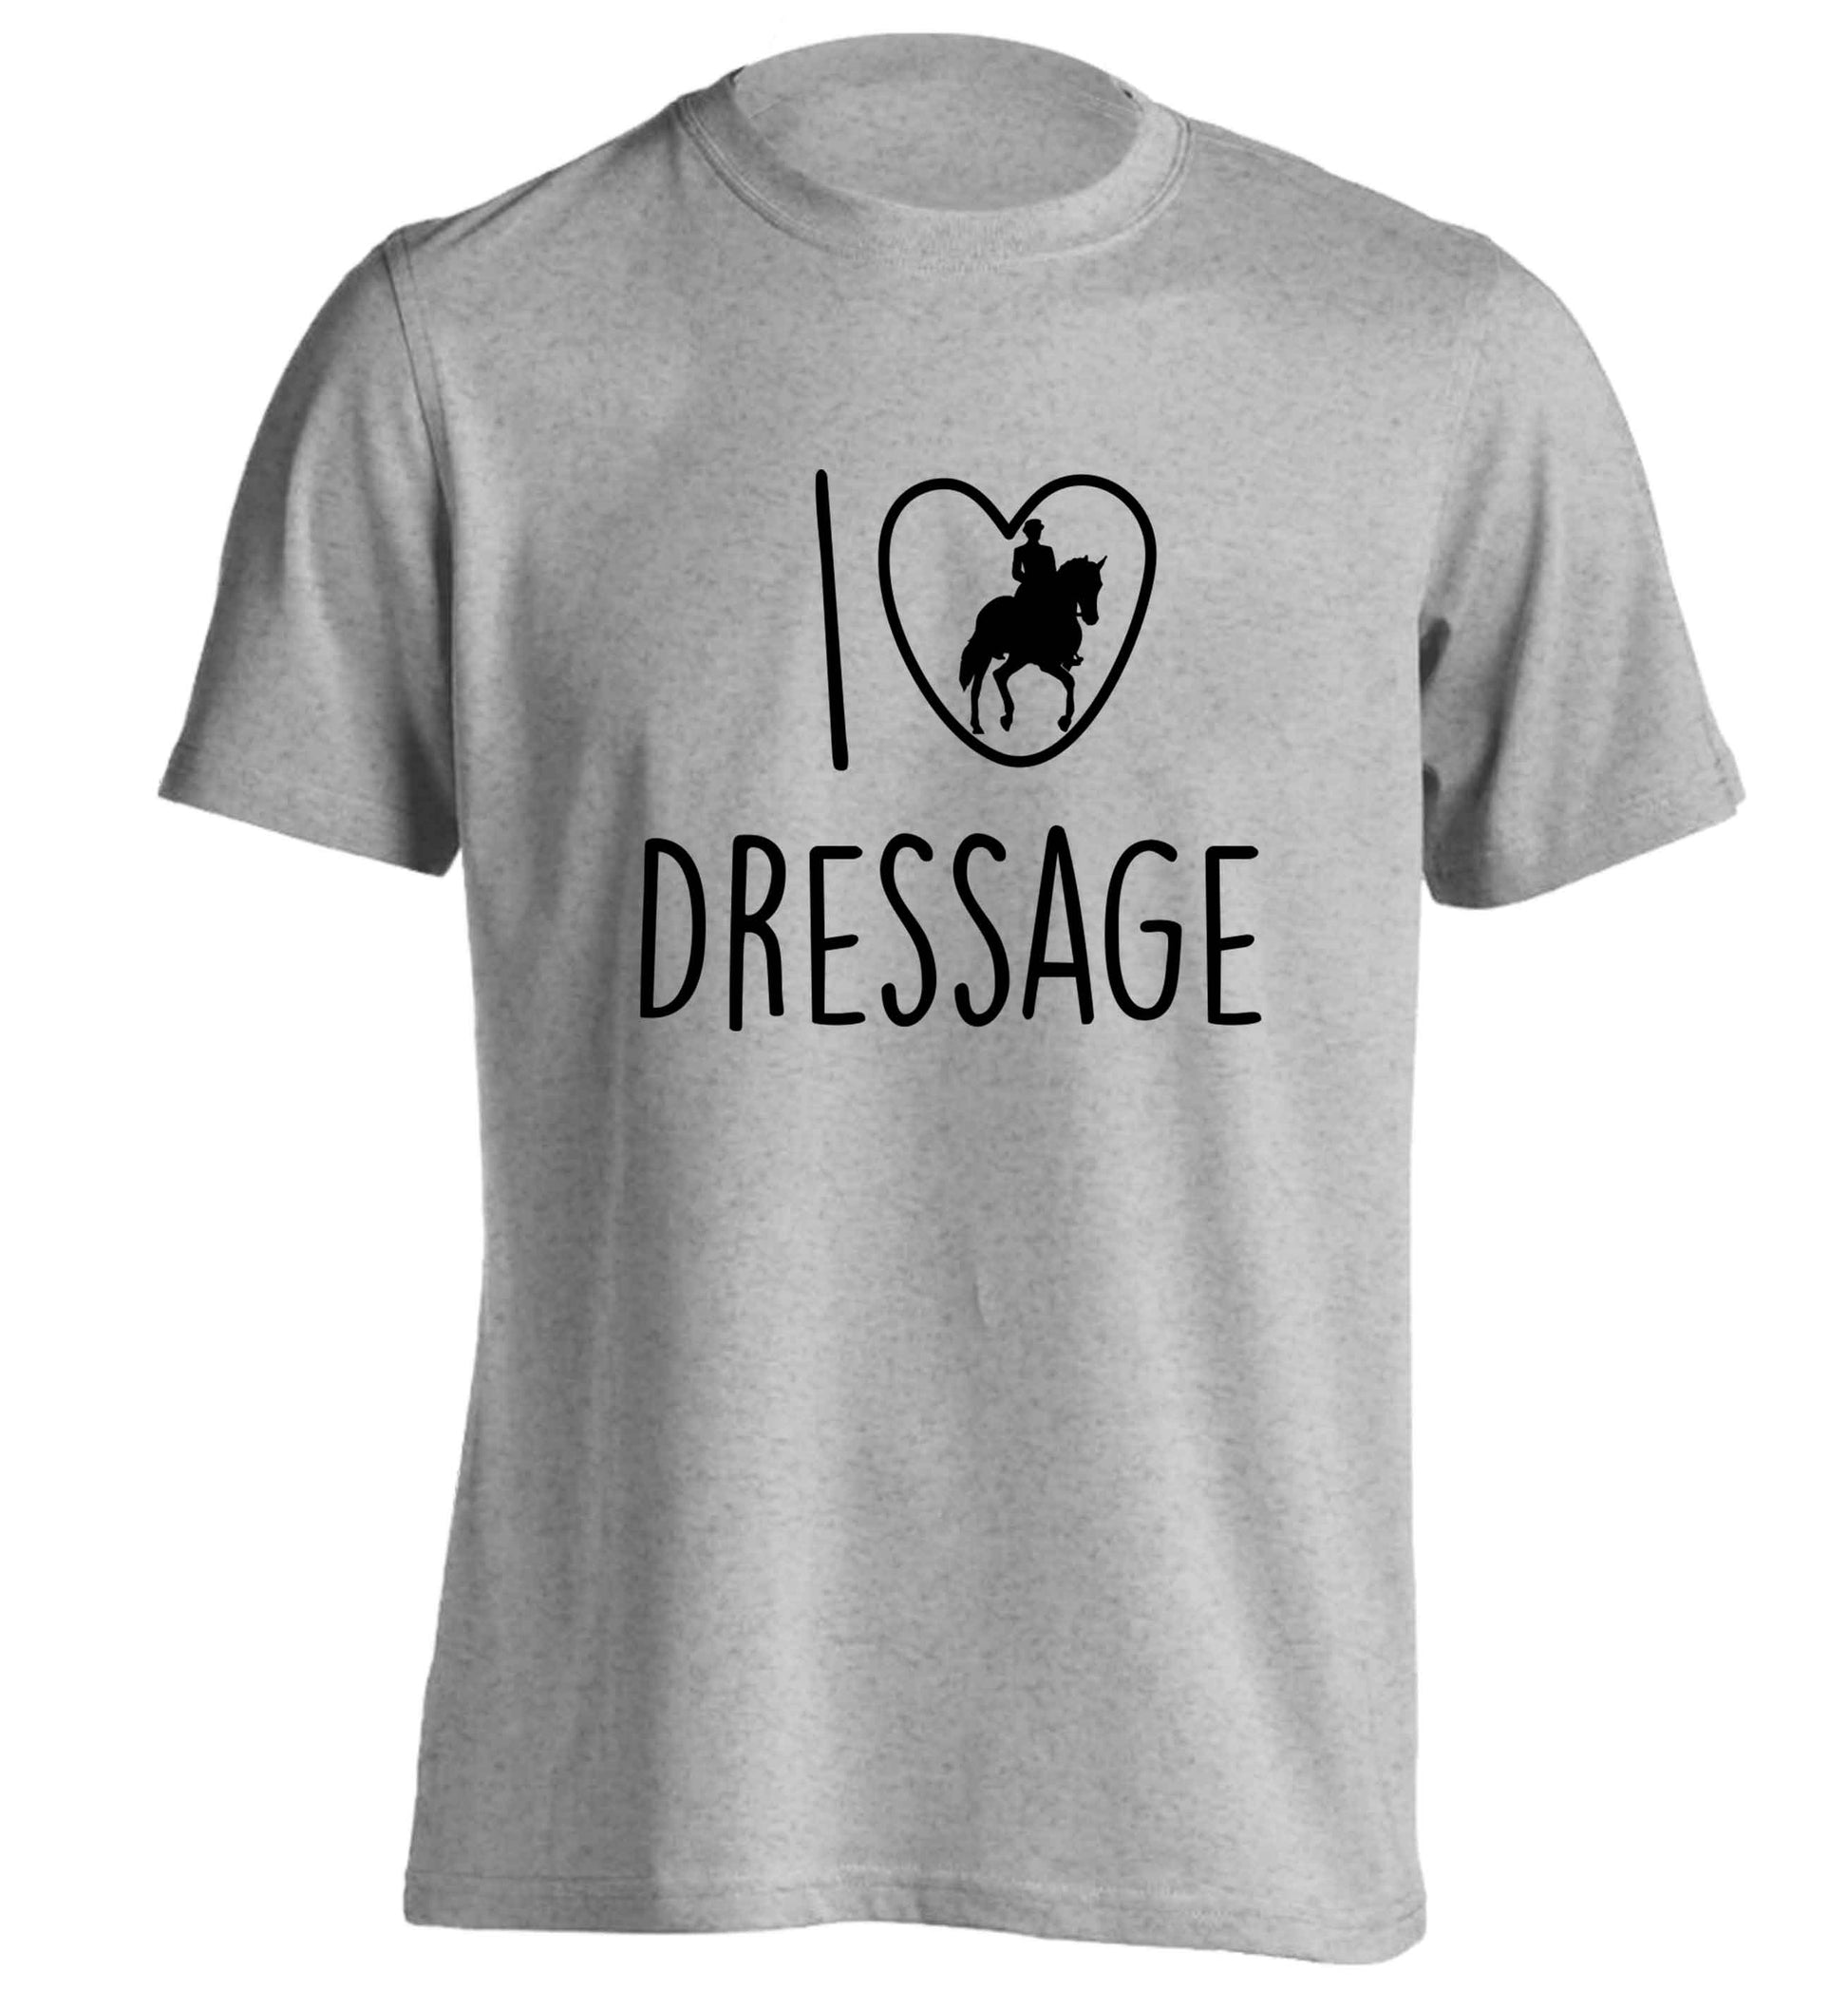 I love dressage adults unisex grey Tshirt 2XL